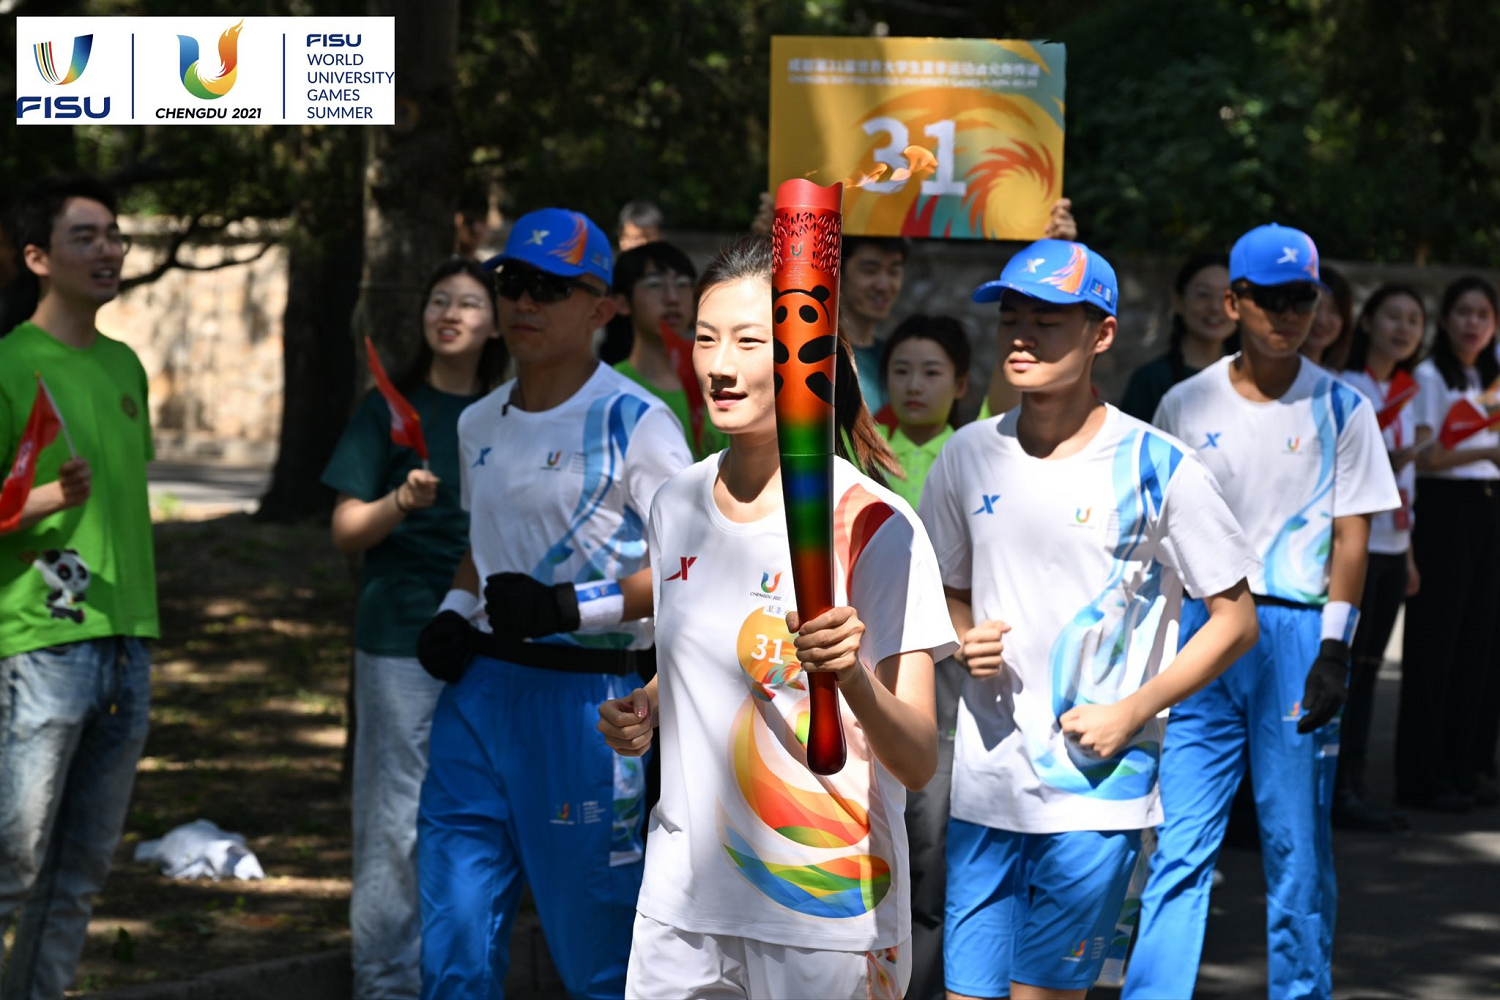         Un estudiante chino lleva la antorcha de los Juegos Mundiales Universitarios de Verano y corre por una calle arbolada de la ciudad.